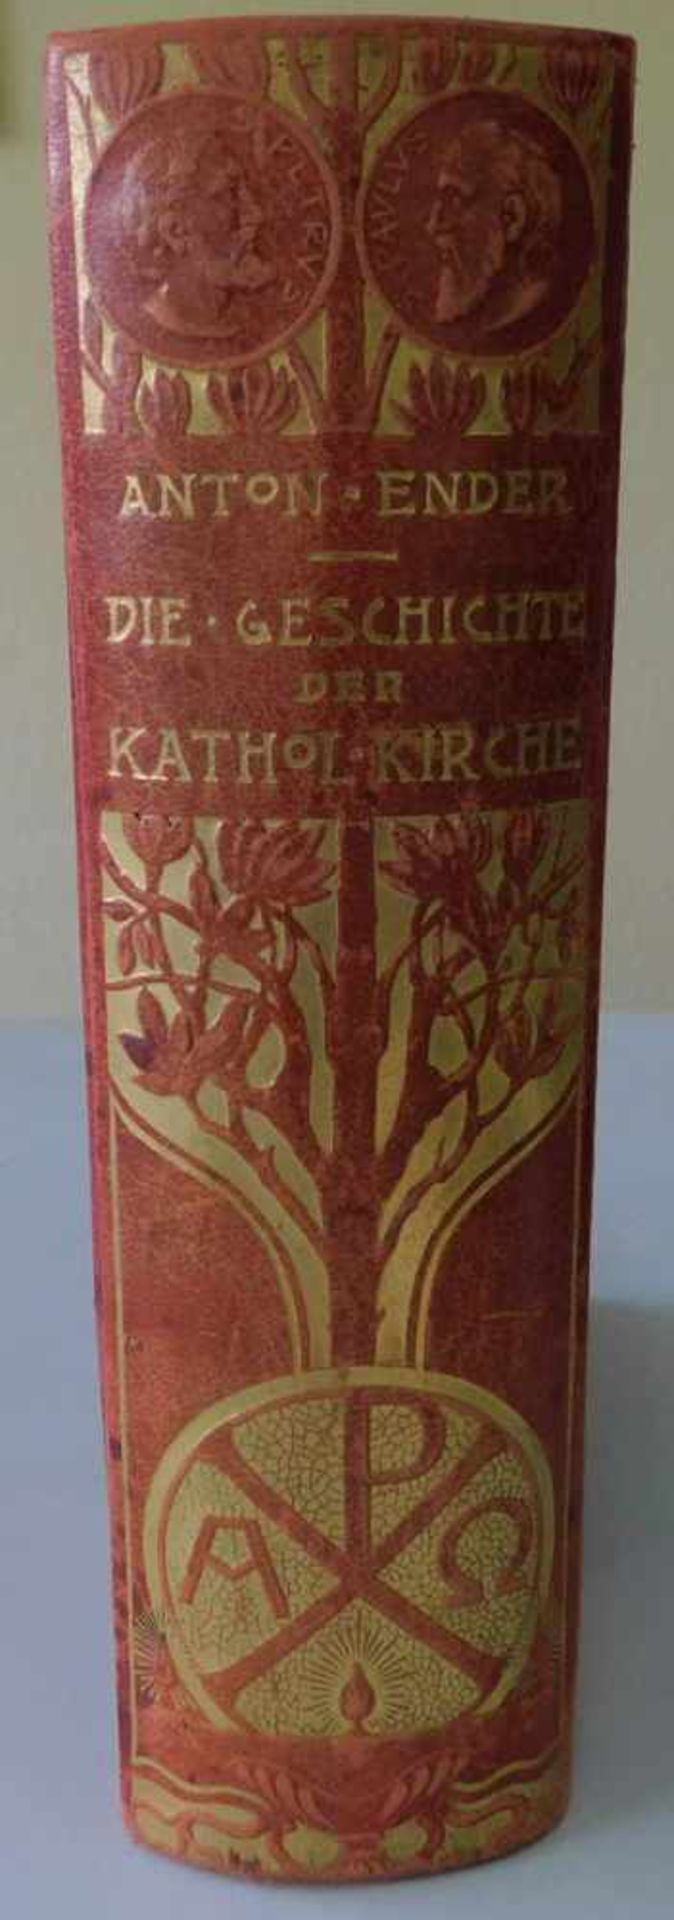 Buch, Die Geschichte der katholischen Kirche, v. Anton Ender, Verlagsanstalt Henziger 1926, 4. - Bild 2 aus 4